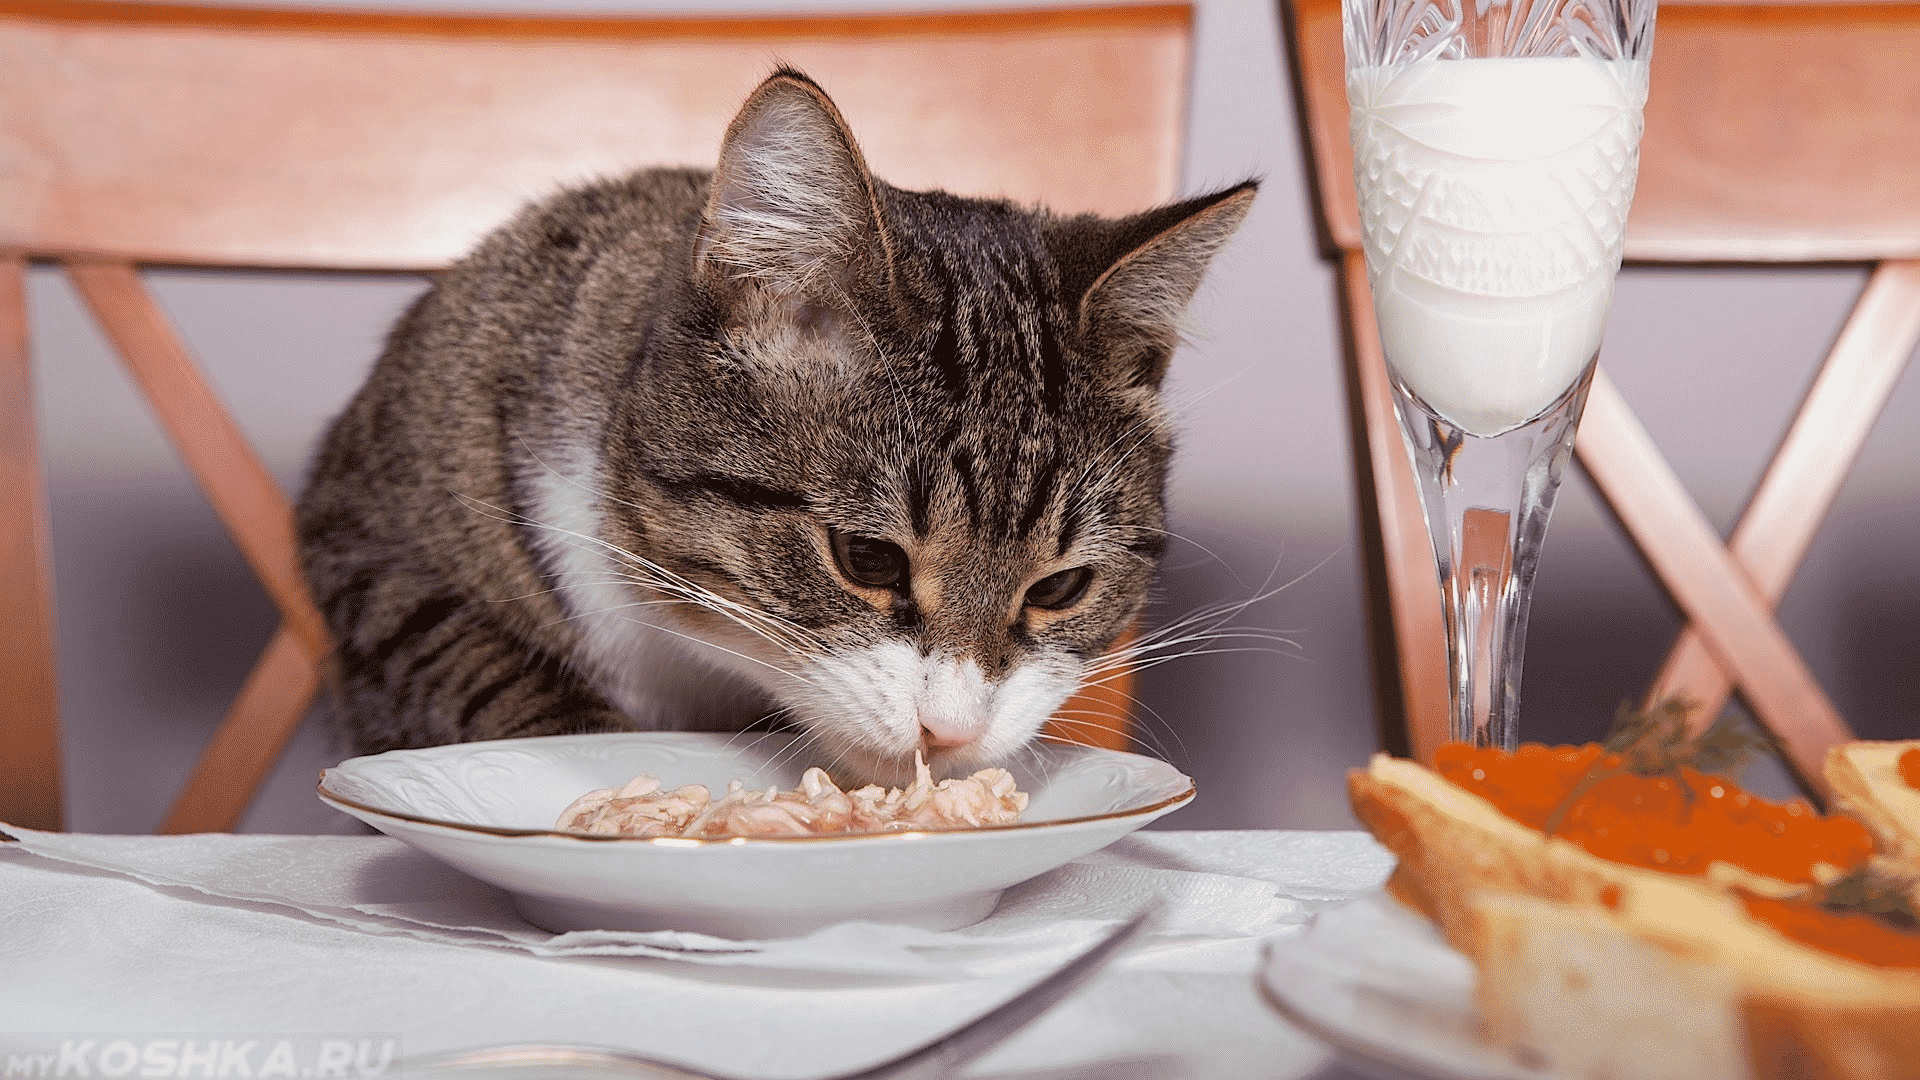 Ученые: домашняя еда может быть опасна для кошек